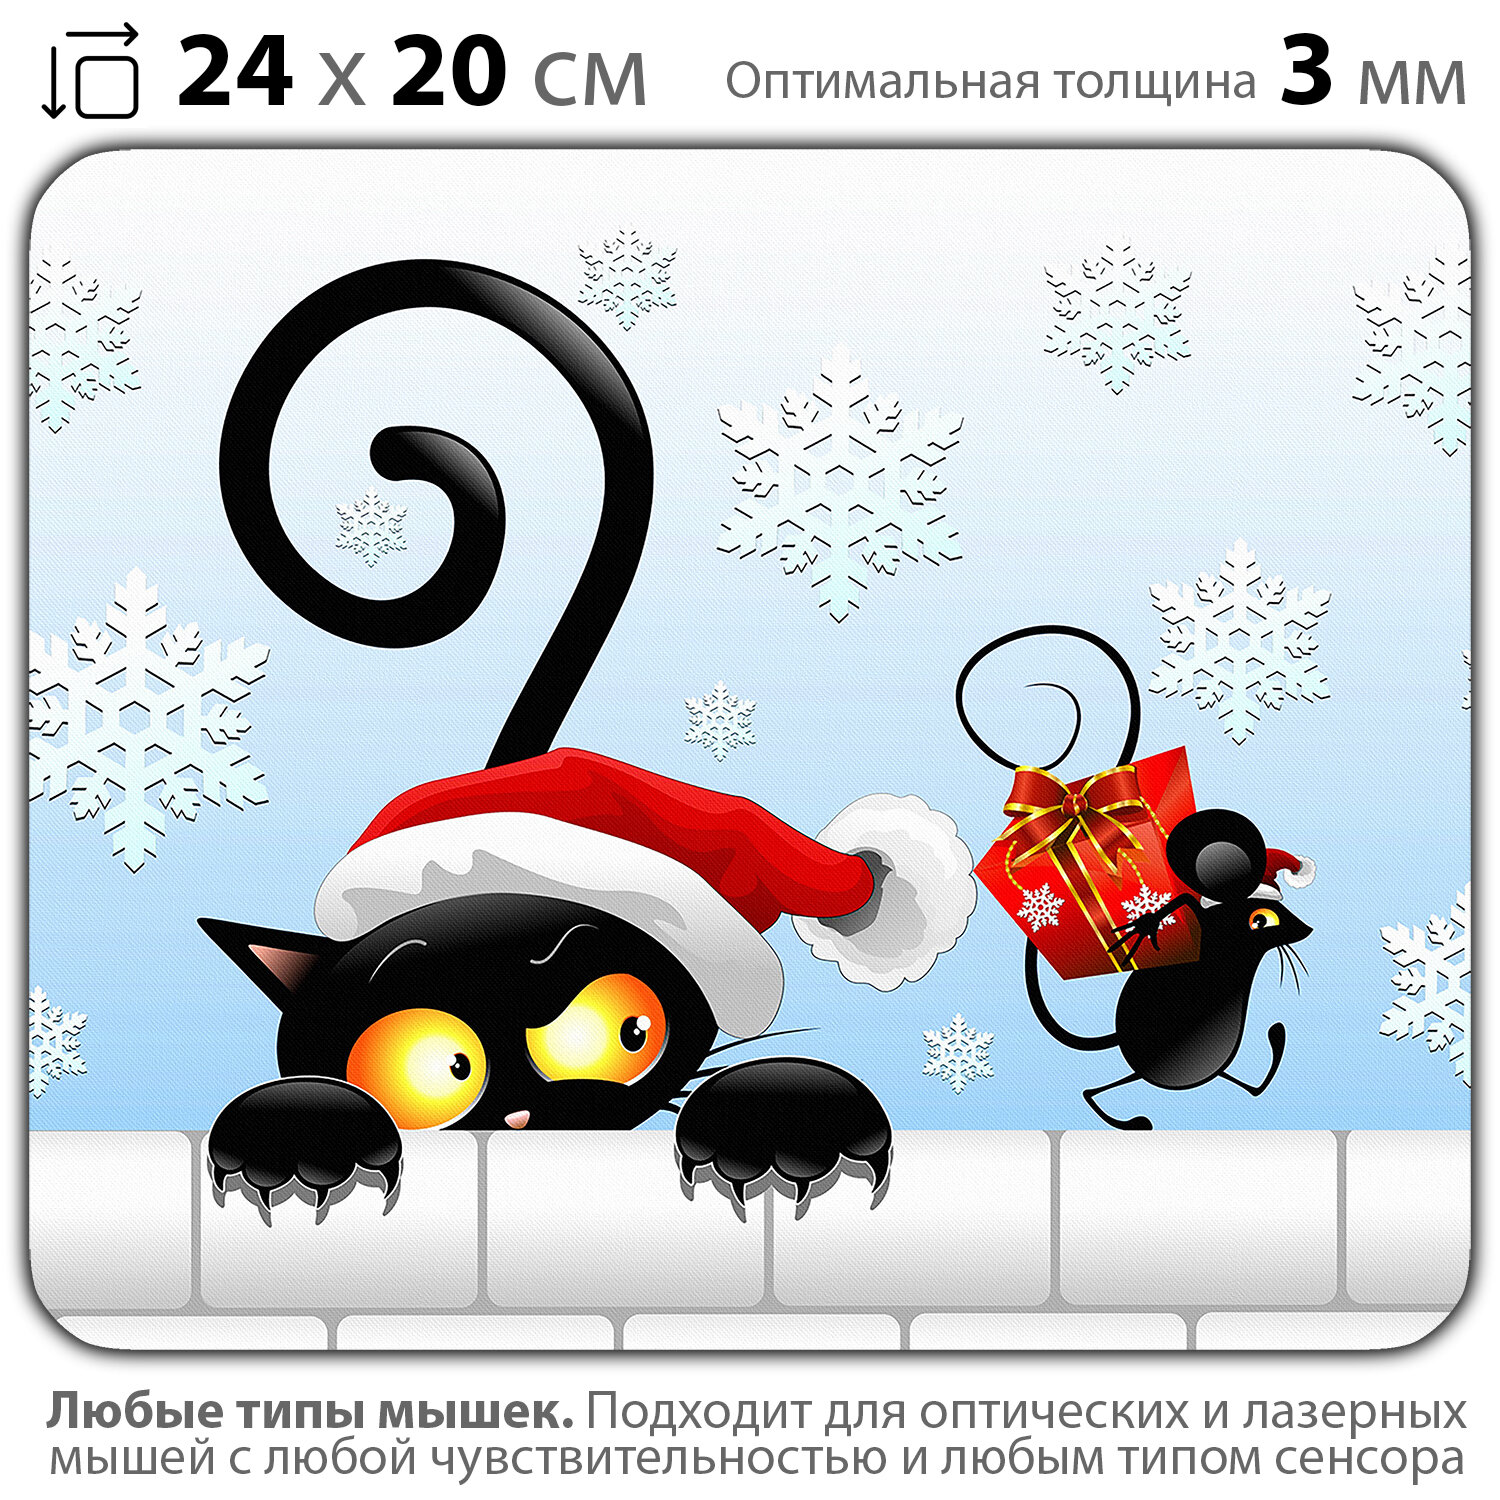 Коврик для мыши "С Новым годом! Кошка с мышкой" (24 x 20 см x 3 мм)